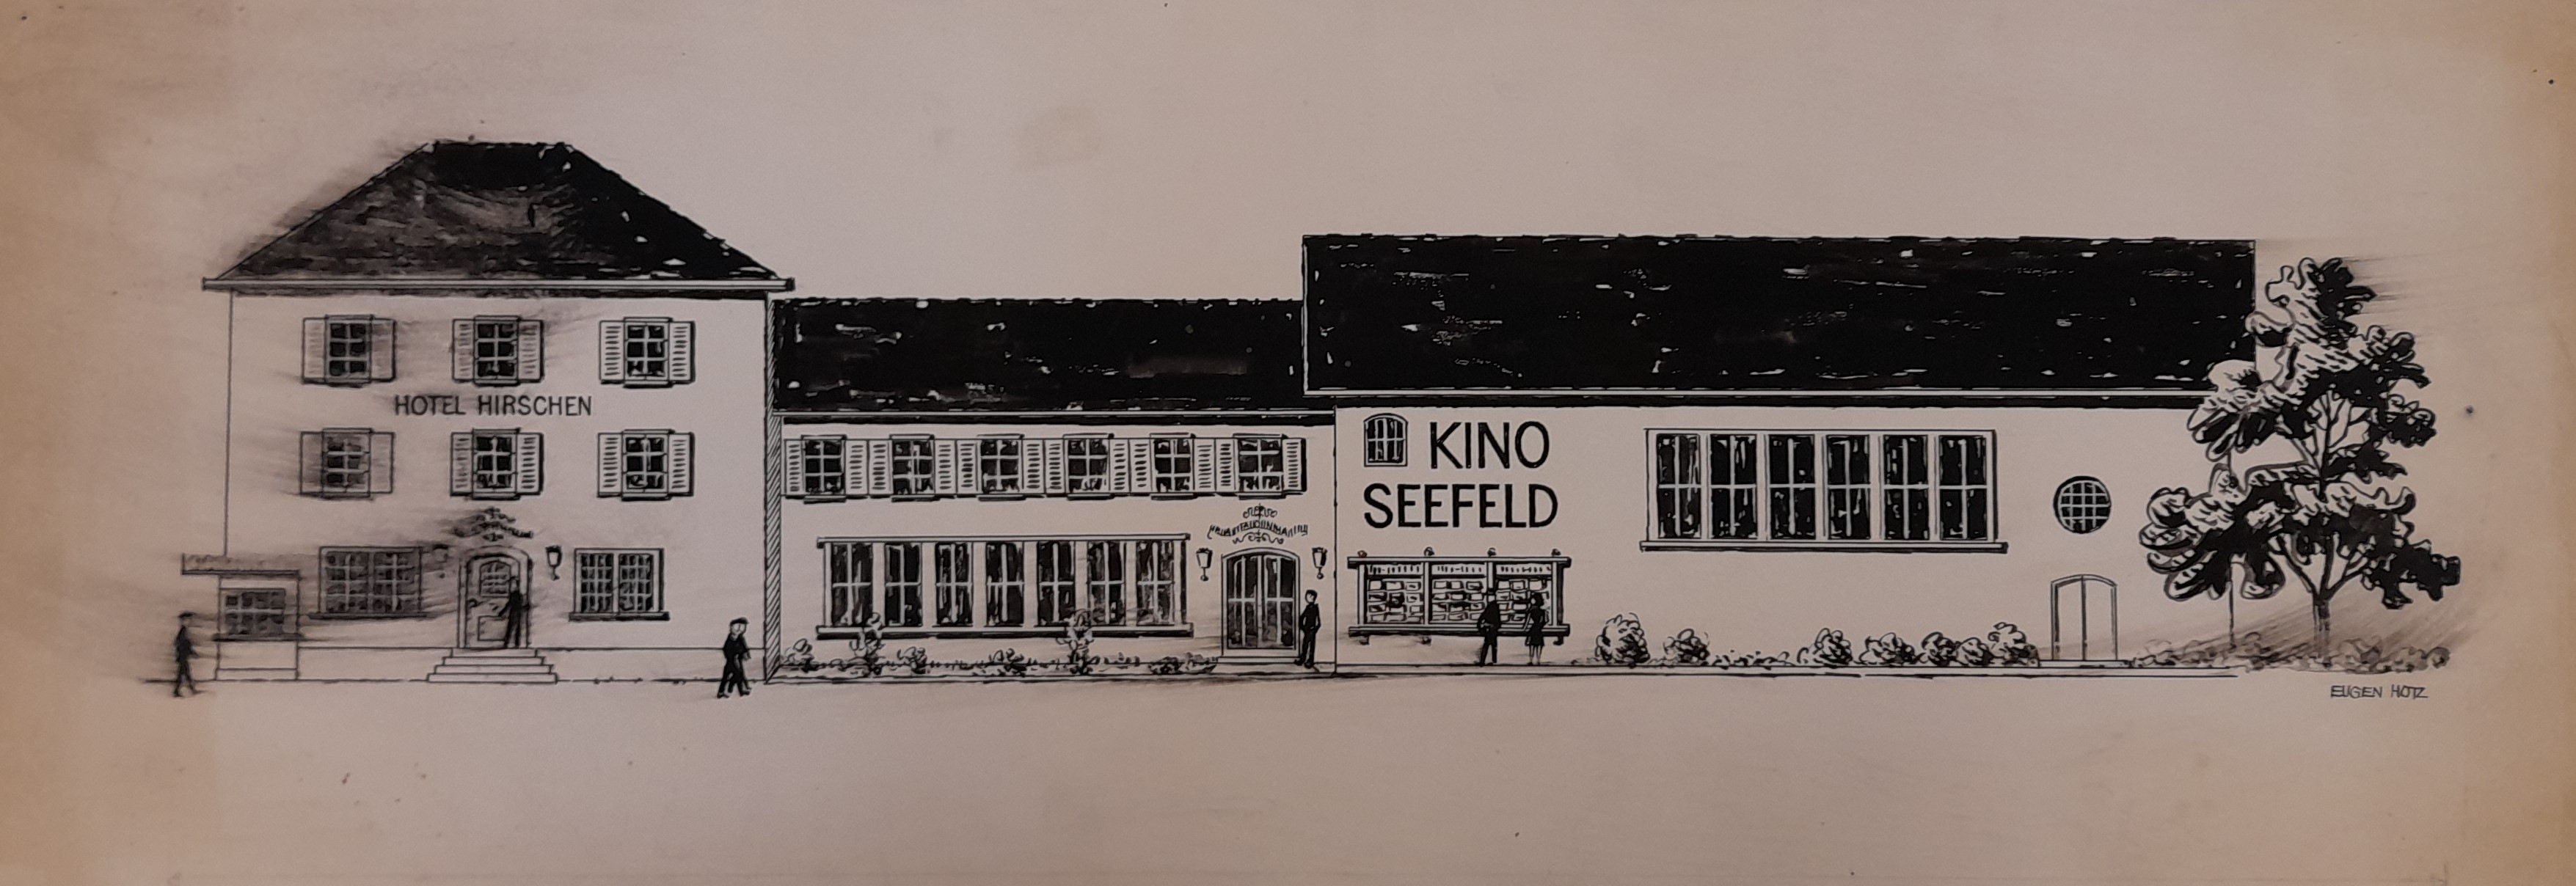 Cliché des Kino Seefeld, ca. 1950 (P.0163.09.17)